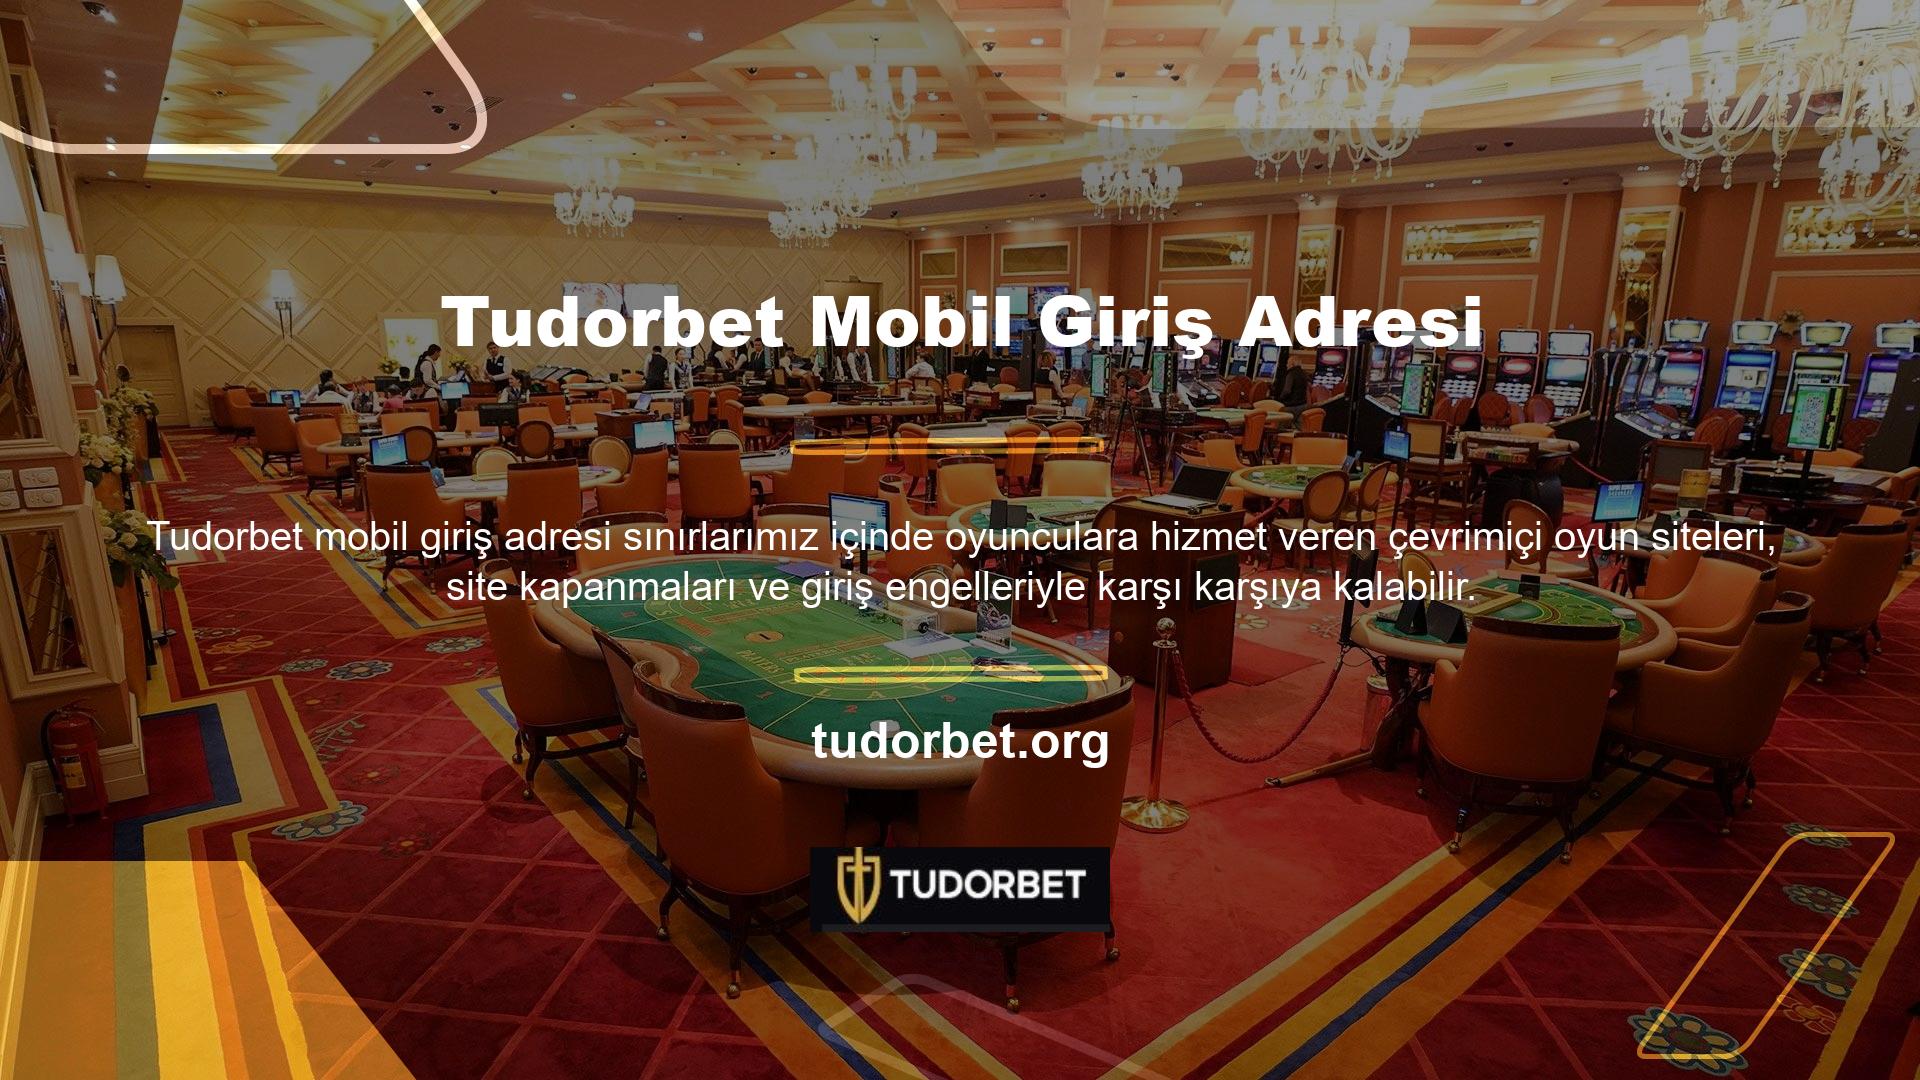 Tudorbet online Casino siteleri de hizmet verdikleri bölgeye göre bu kampanyalardan faydalanabilmektedir